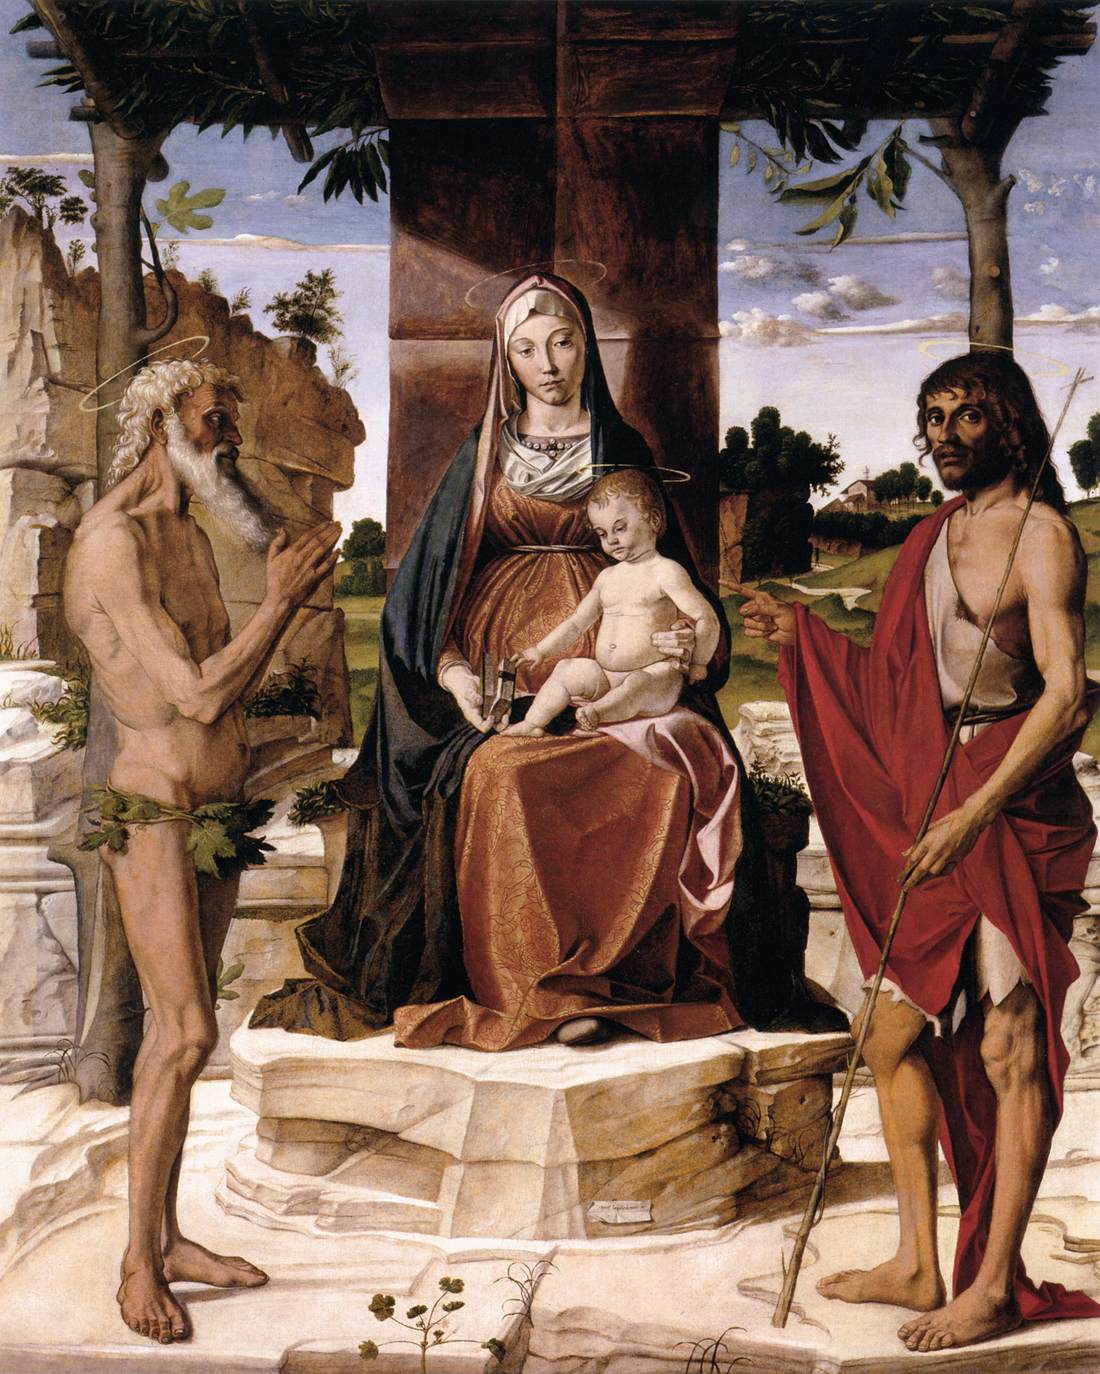 הבתולה והילד תחת פרגולה עם סן חואן באוטיסטה וסן אונפריוס